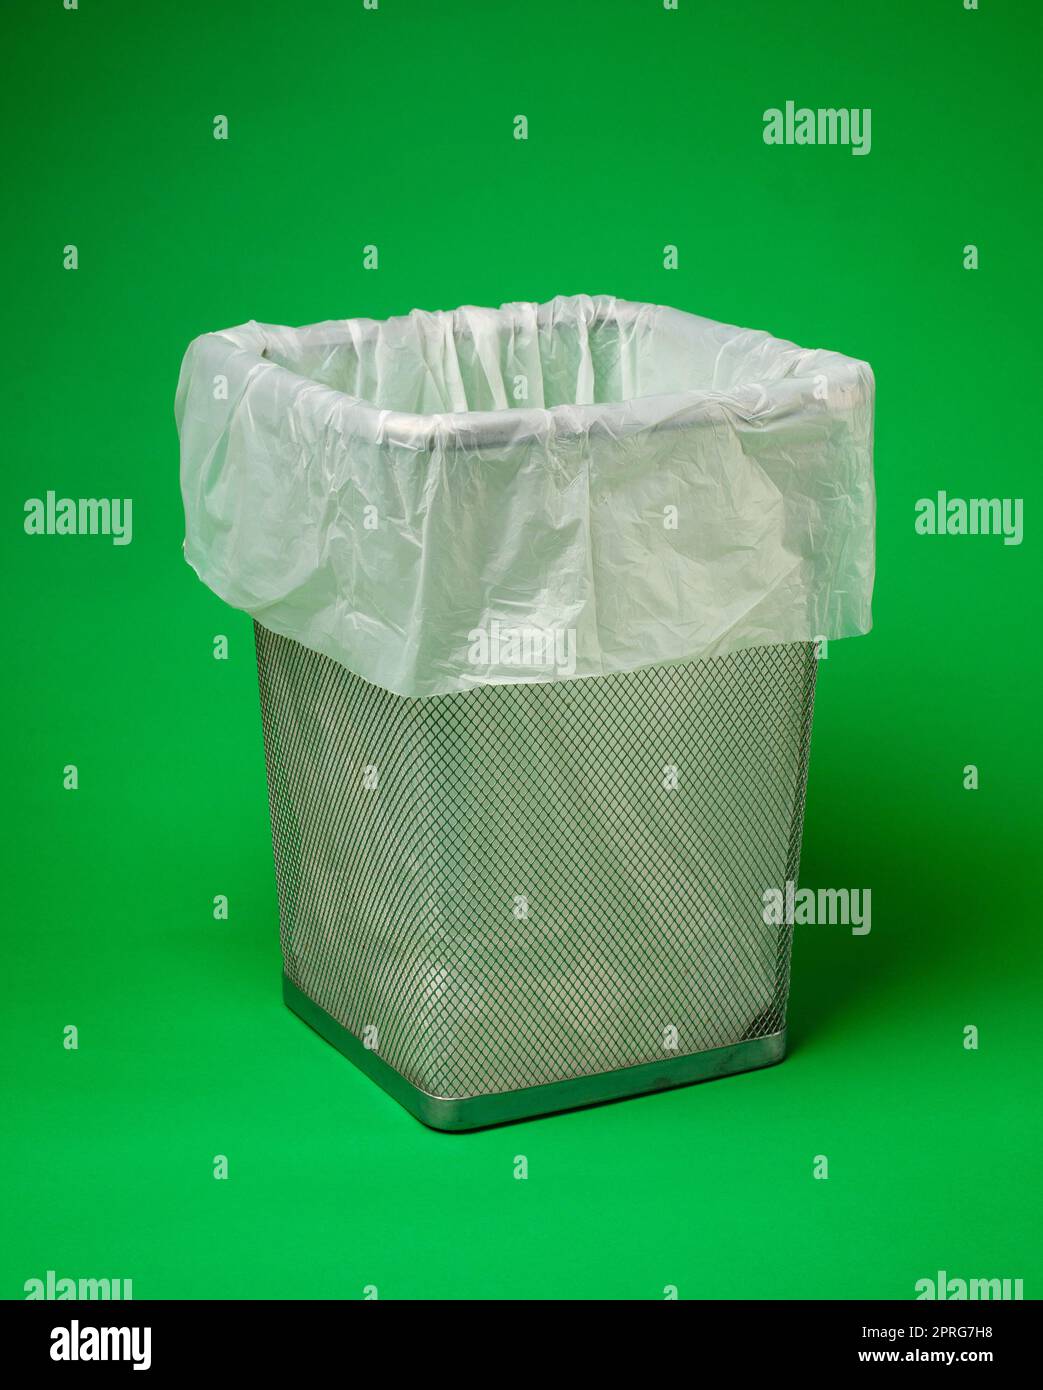 Vider la poubelle avec des supports de sac à déchets biodégradables respectueux de l'environnement sur fond vert. Banque D'Images